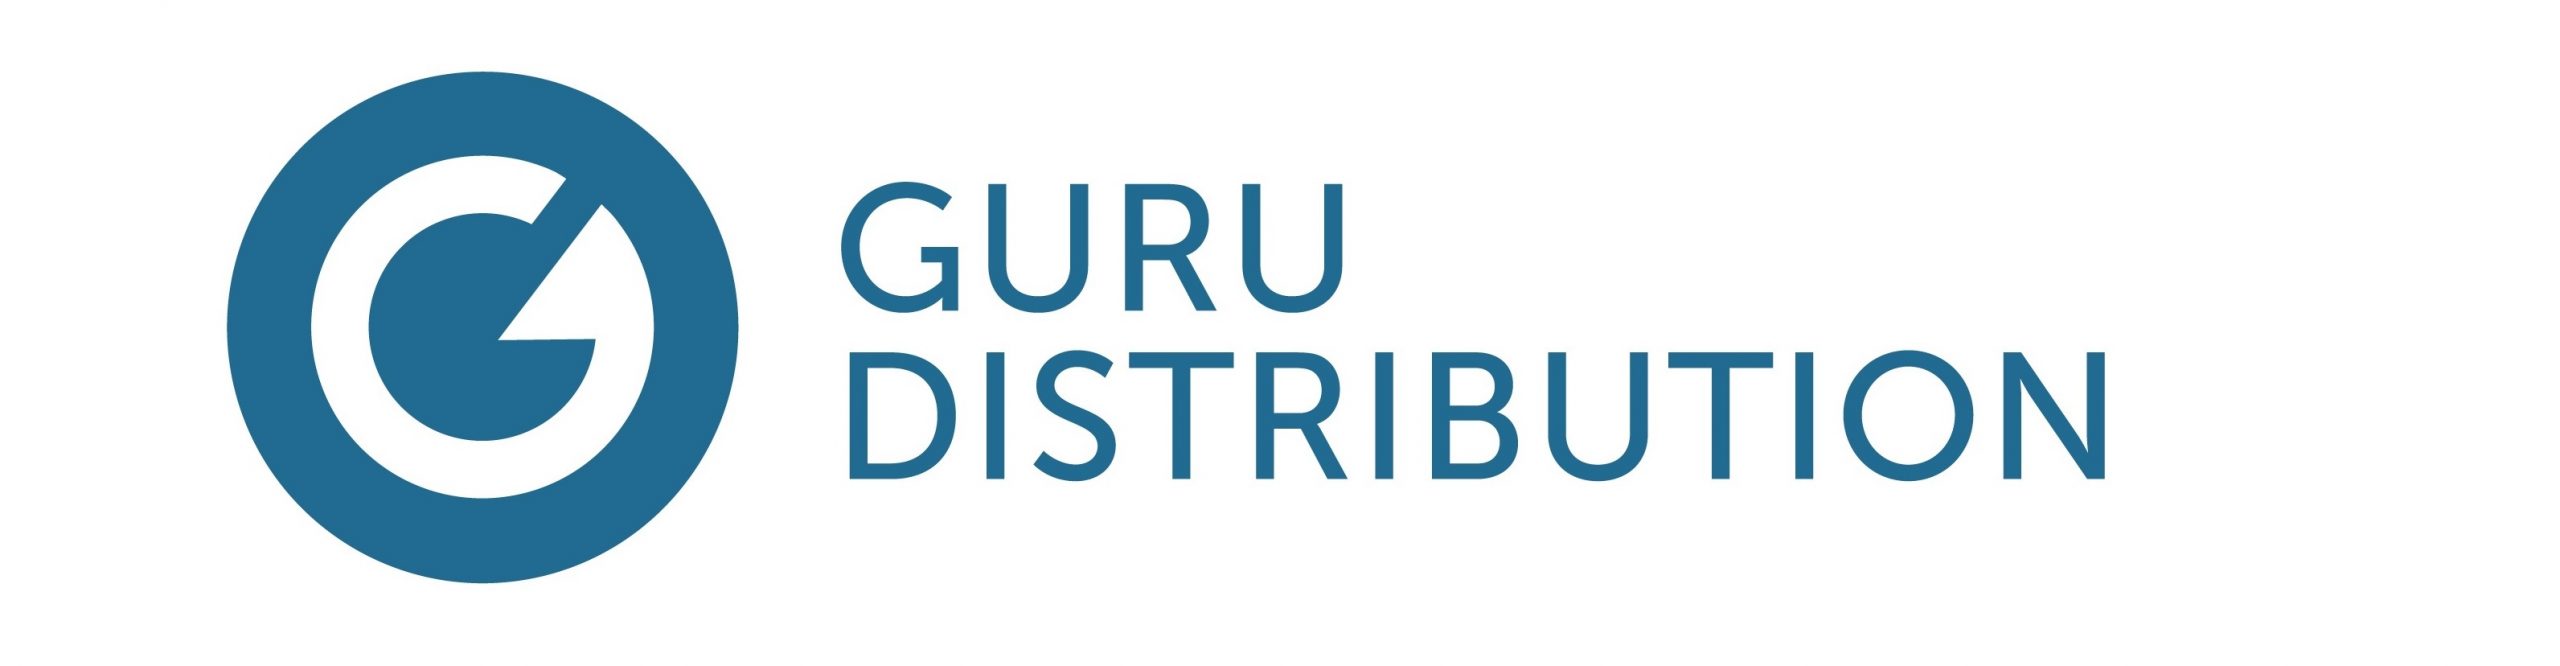 GURU Beverage Co. - Crunchbase Company Profile & Funding